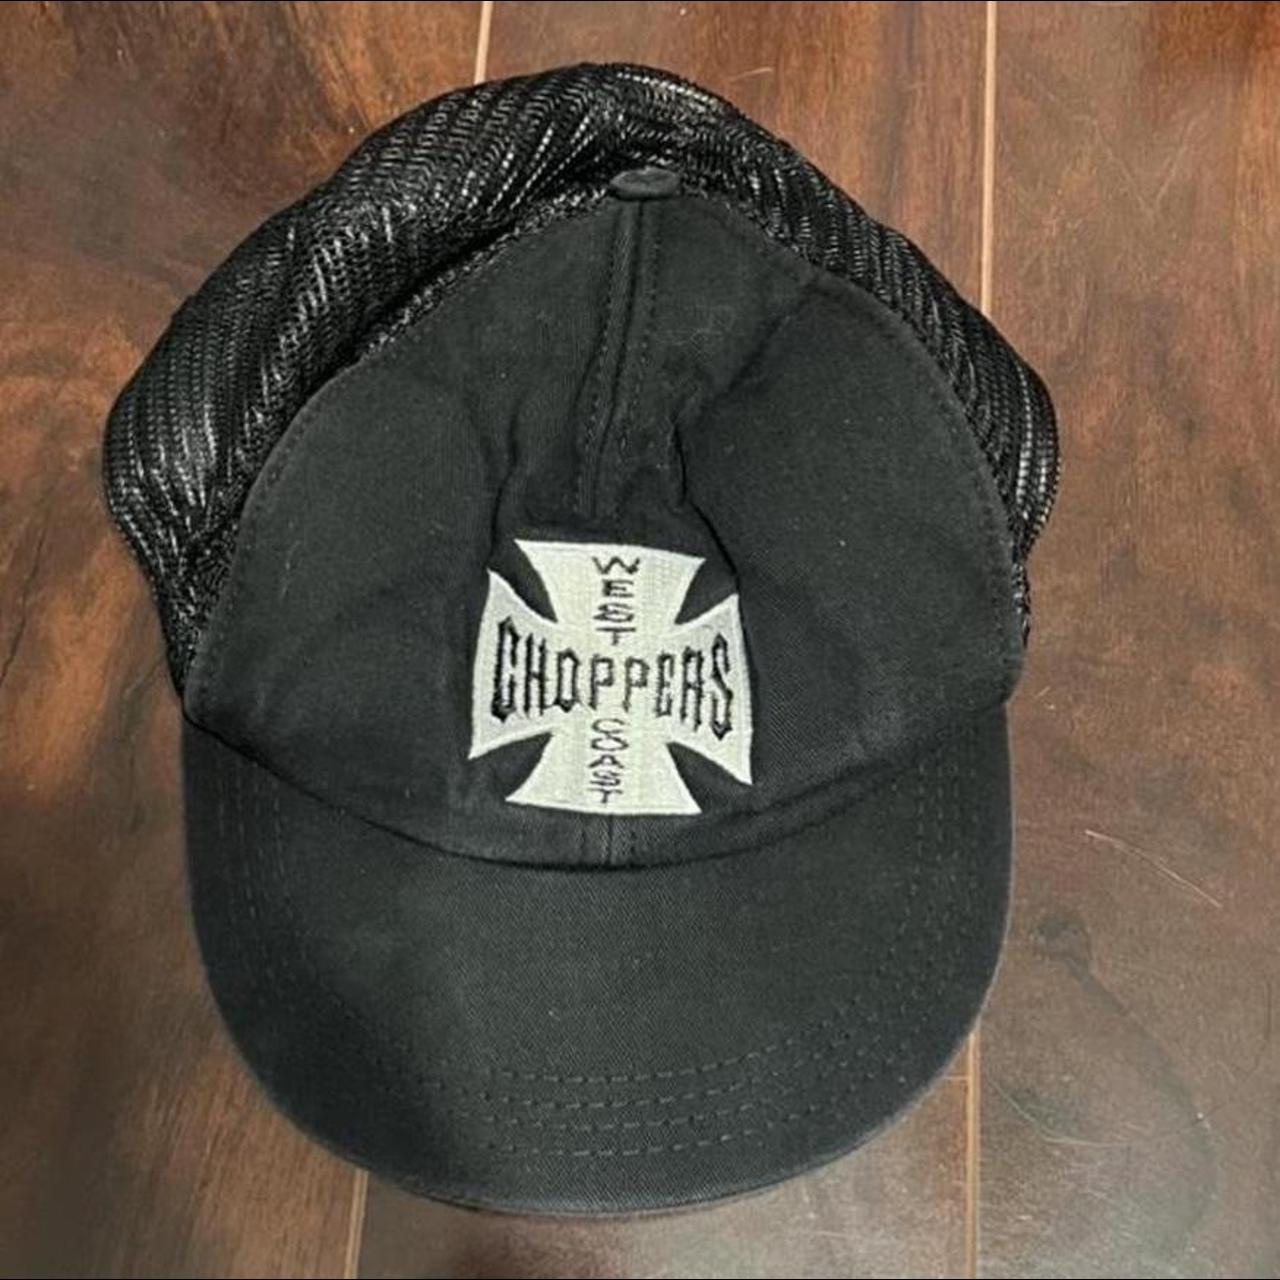 choppers hat - Depop